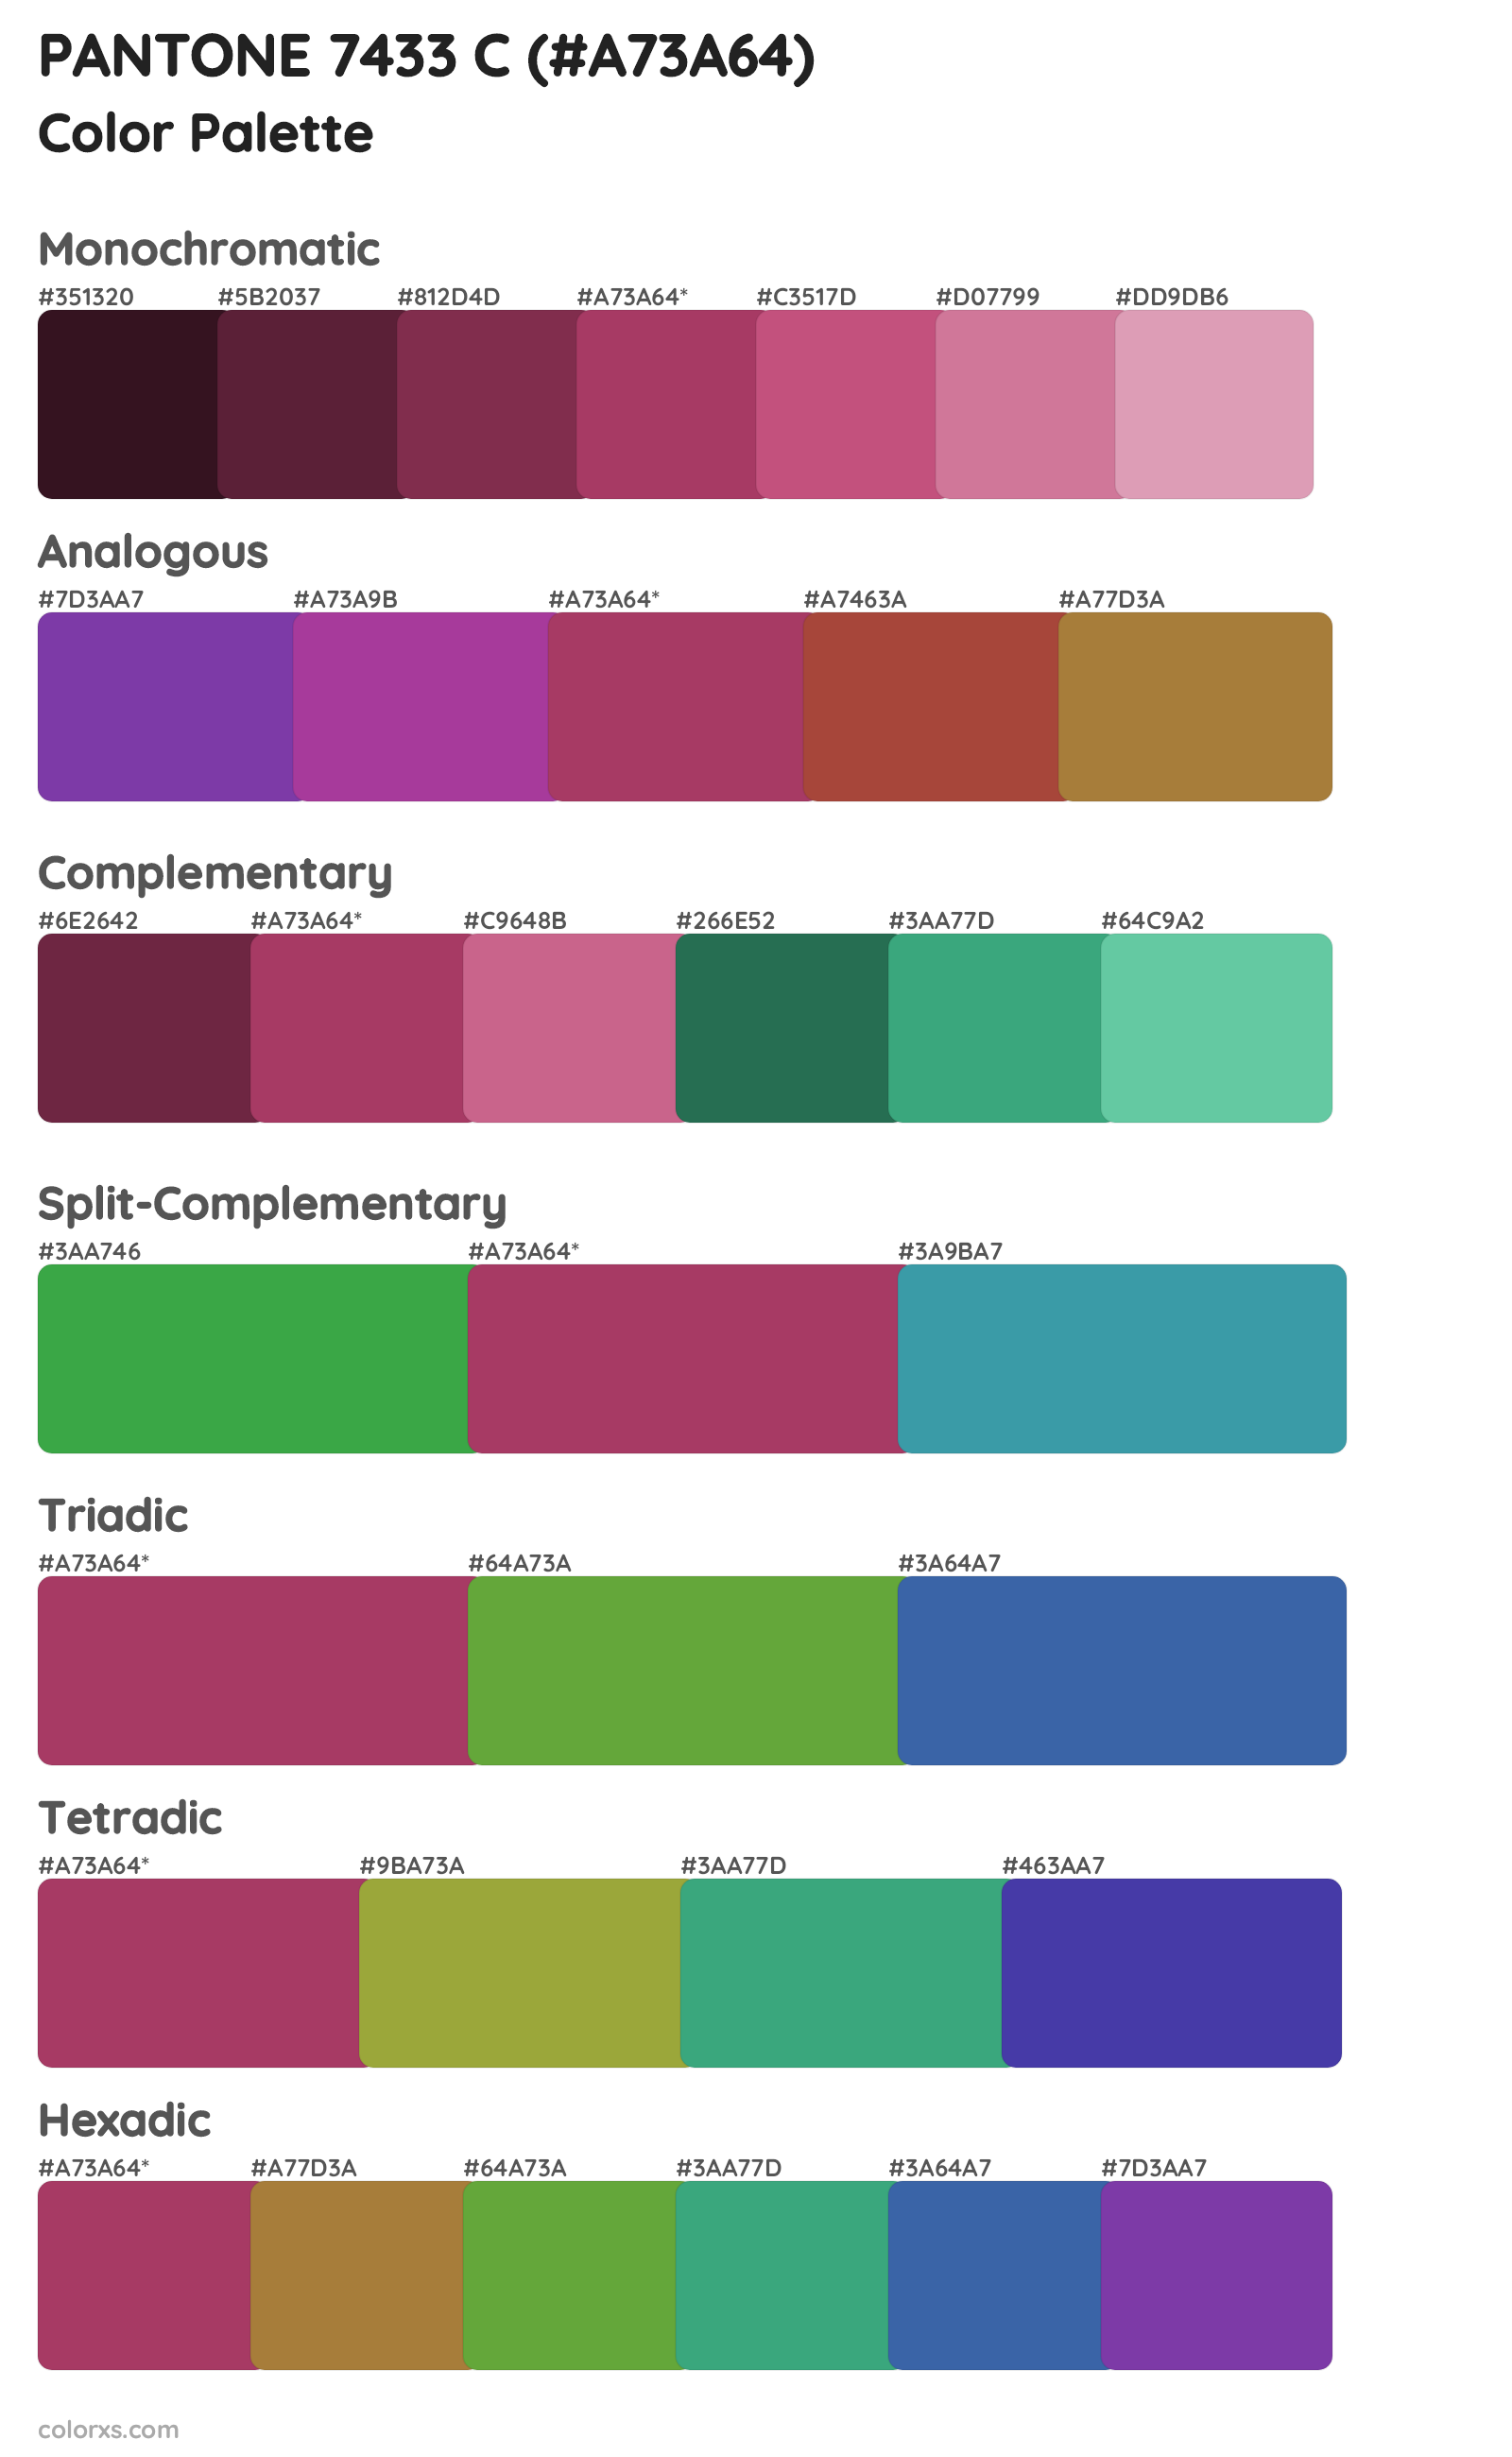 PANTONE 7433 C Color Scheme Palettes